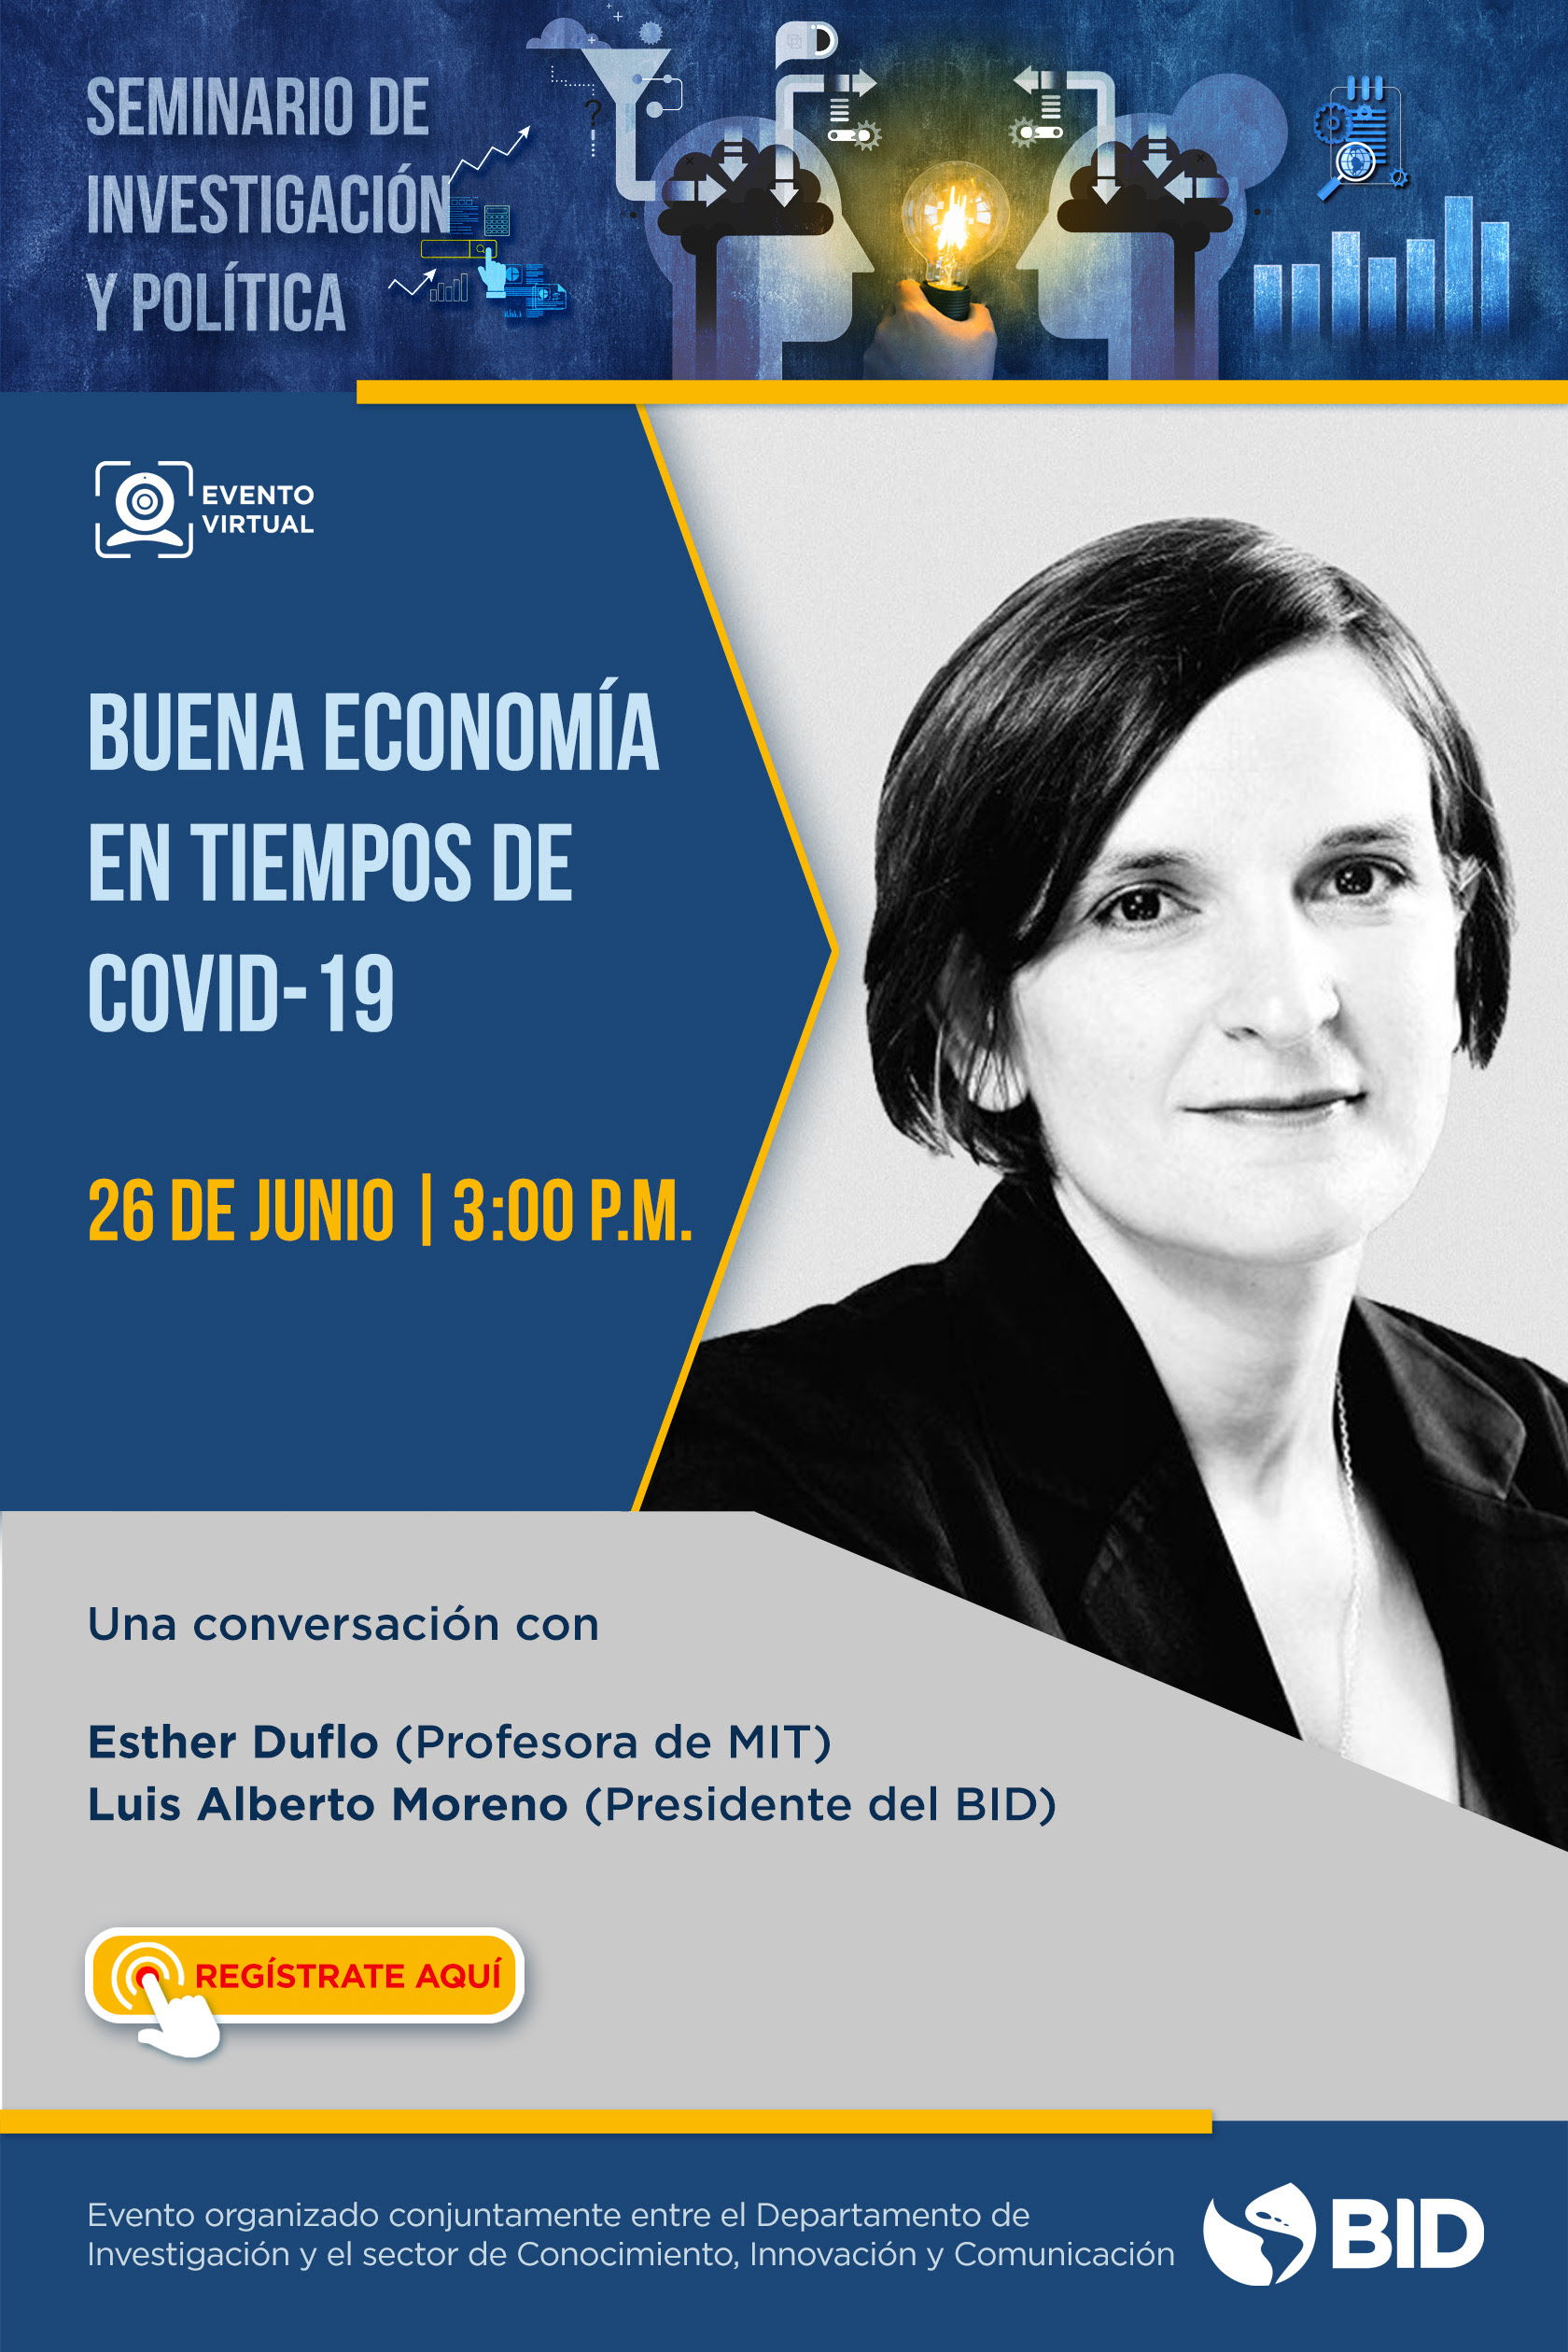 Seminario de Investigación y Política con Esther Duflo: Buena economía en tiempos de Covid-19